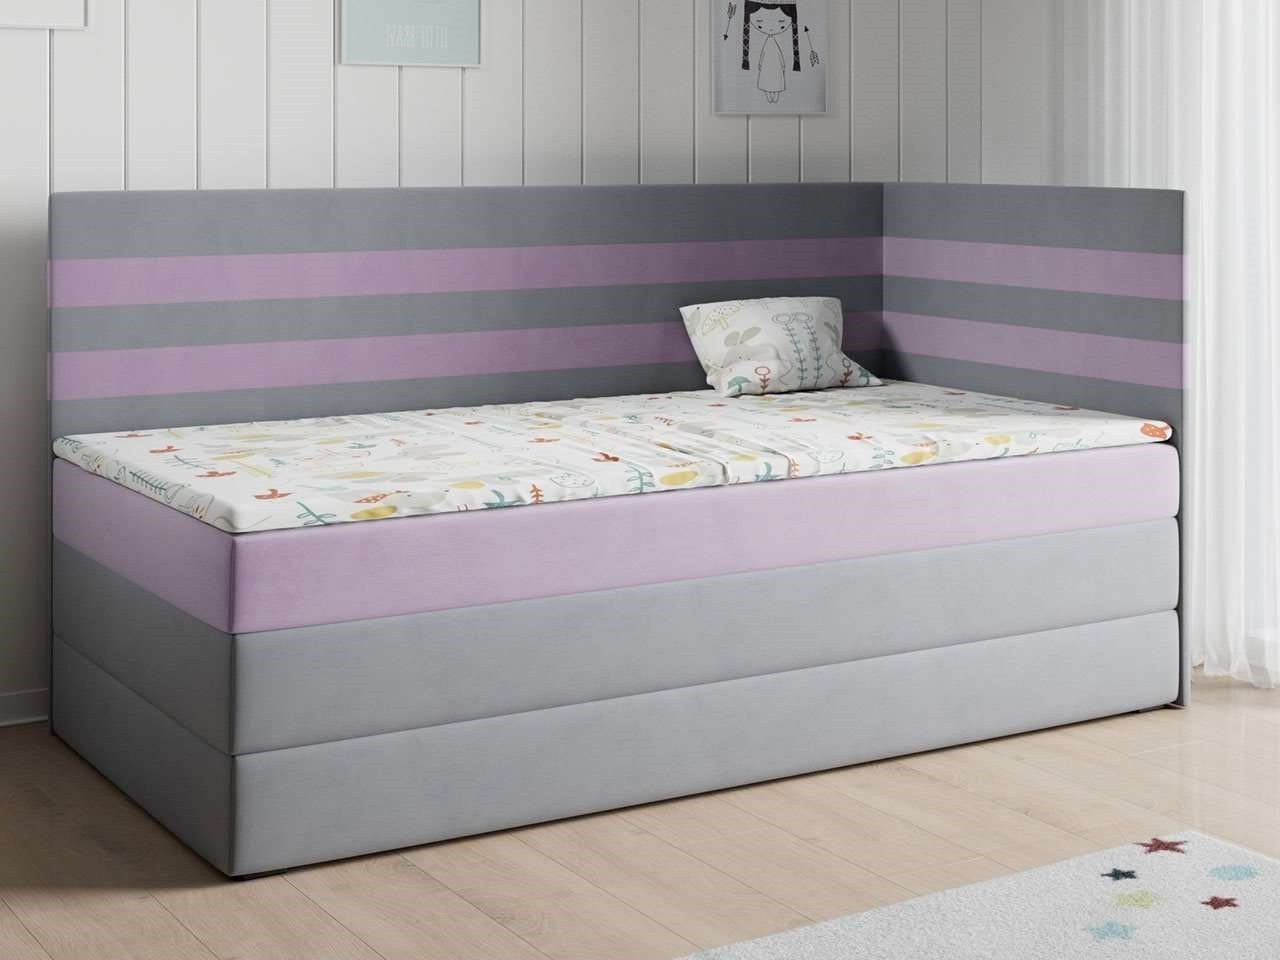 MKS MÖBEL Kinderbett MIKO 3, Jugendzimmer, Kinderzimmer, 90x200 Grau Violett für Polsterbett Boxspringbetten und